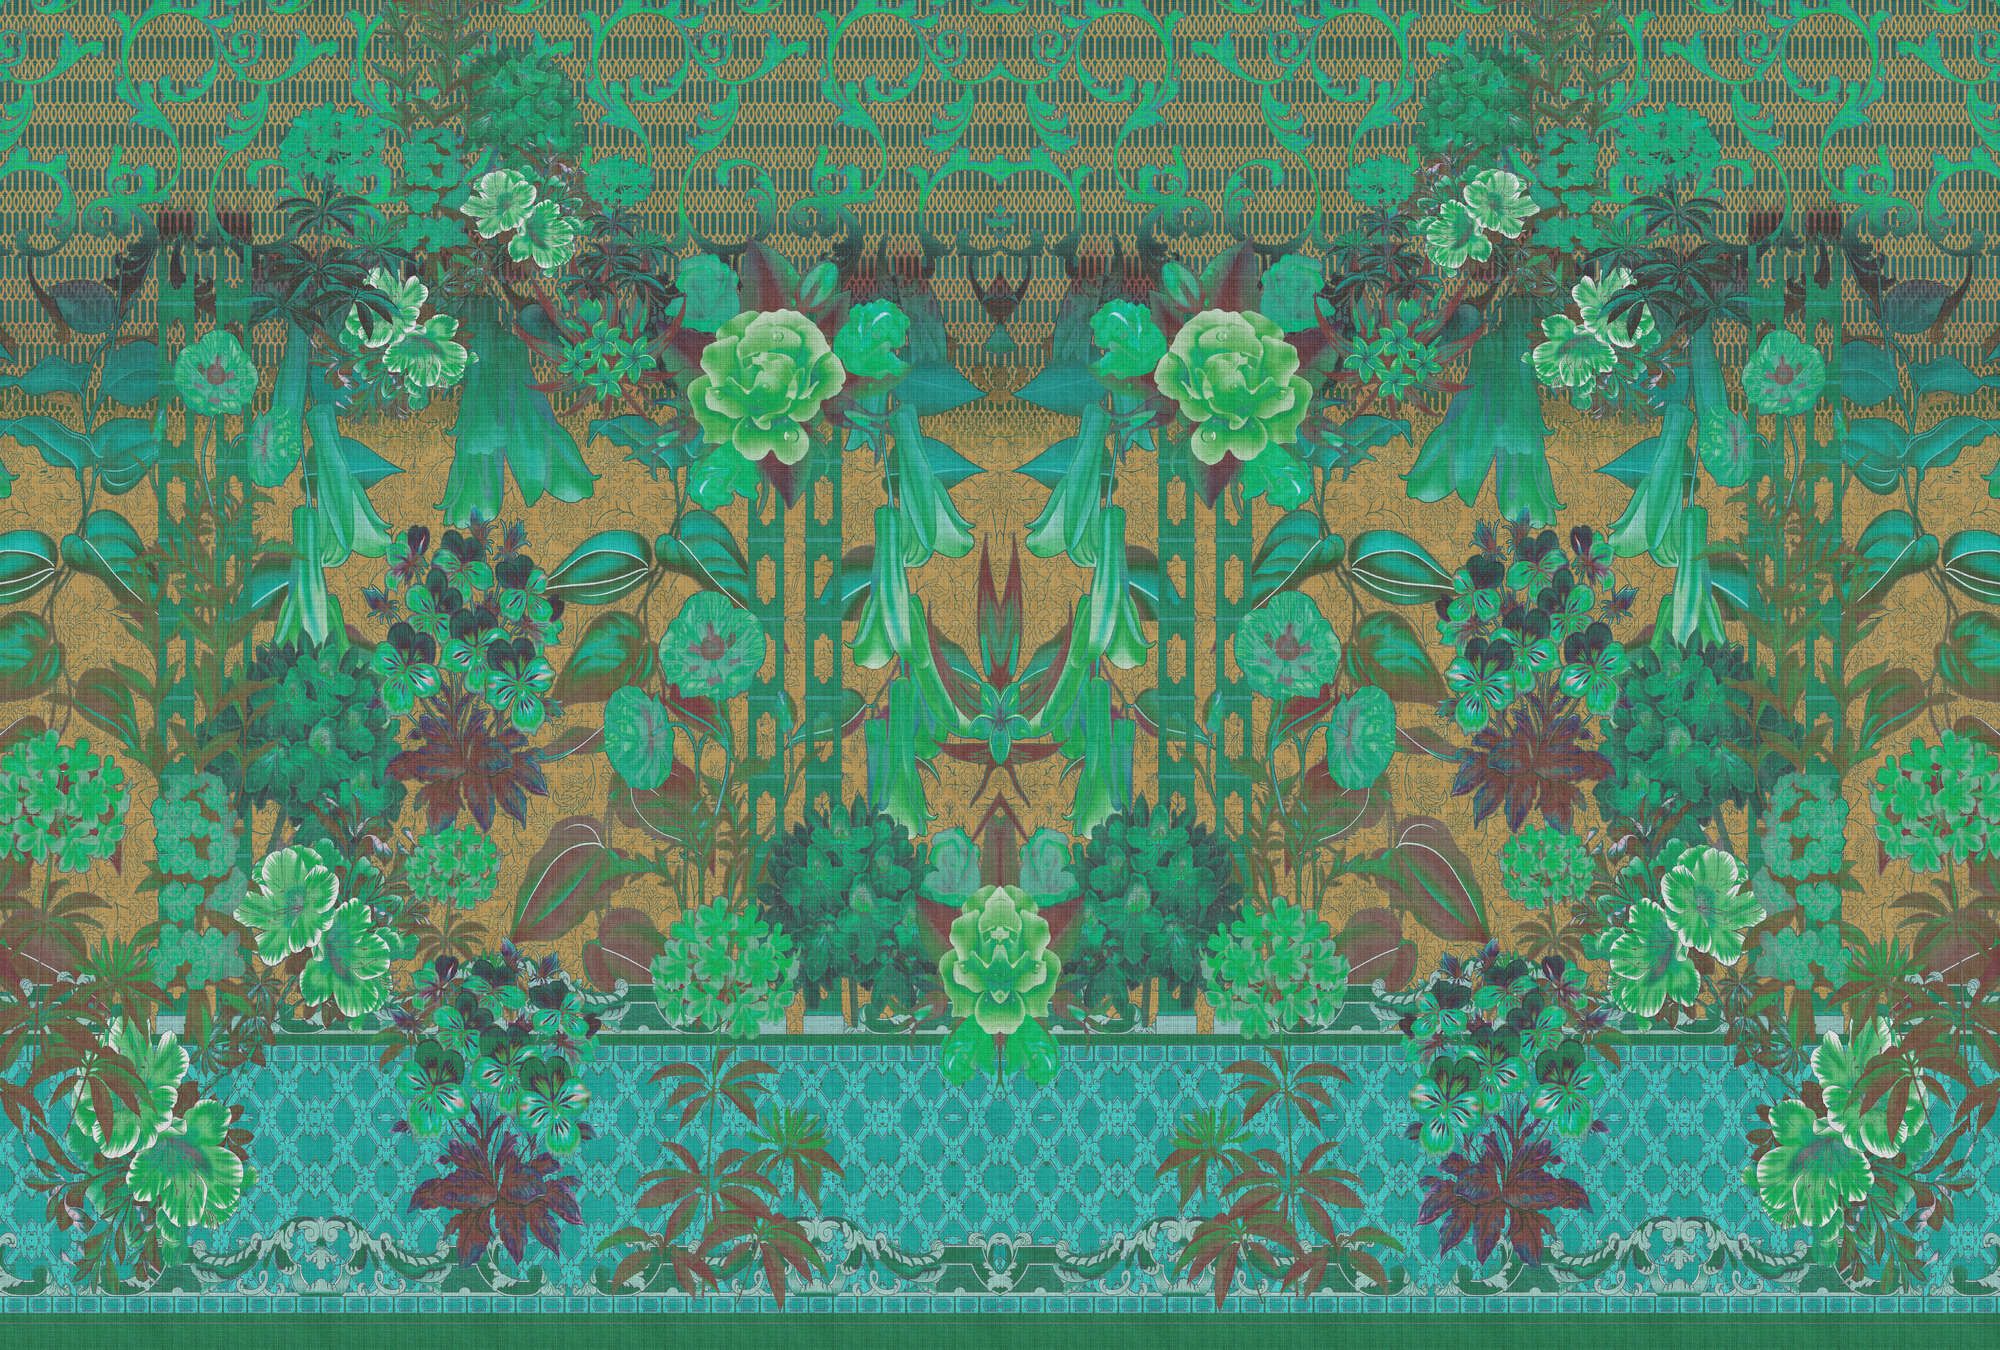             Fotomural »sati 2« - Diseño floral y ornamentos con aspecto de estructura de lino - Verde | Tela no tejida lisa, ligeramente nacarada y brillante
        